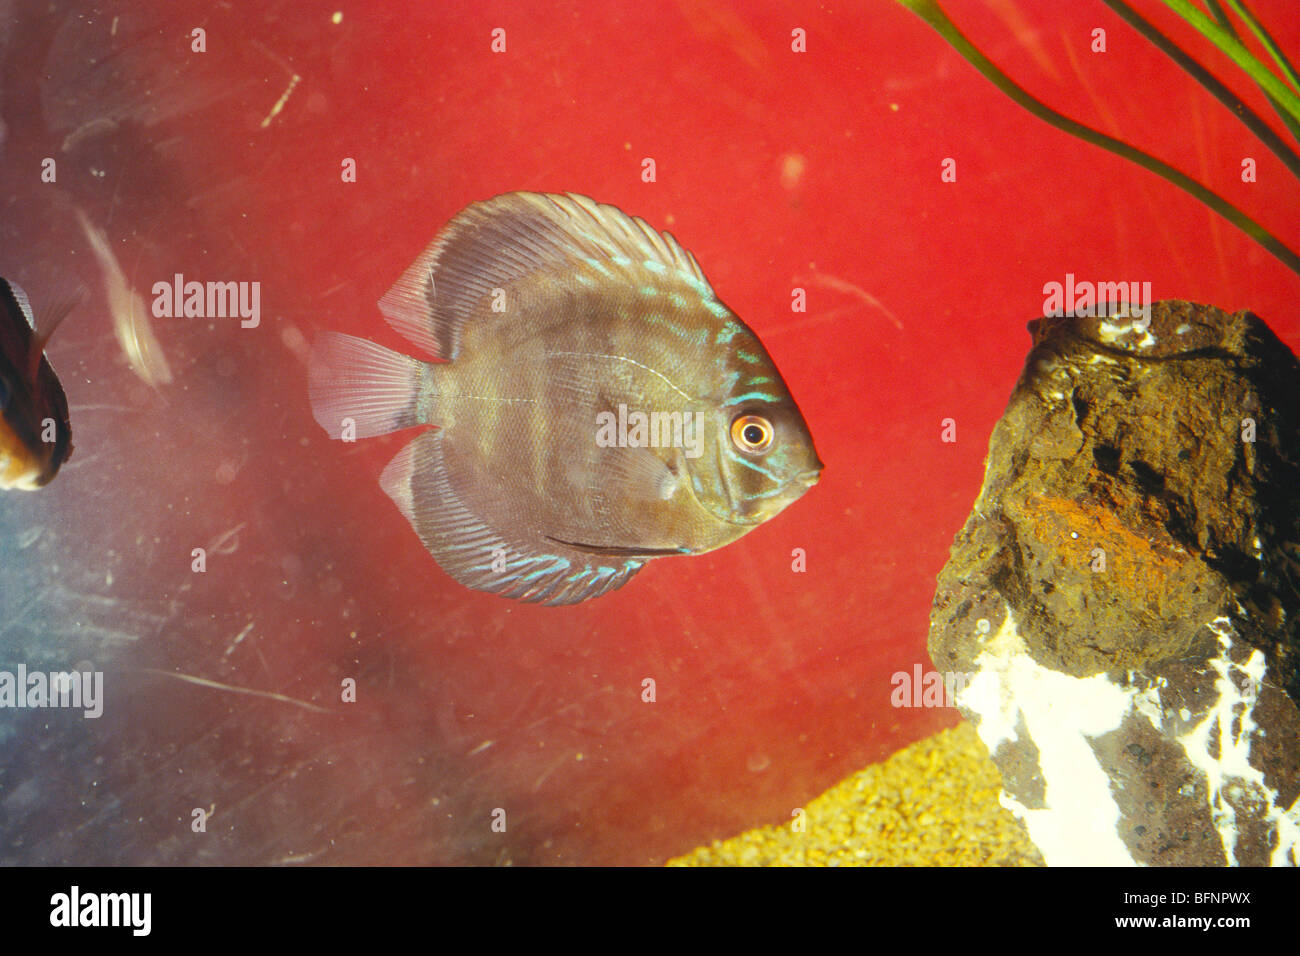 Symphysodon ; discus fish in aquarium Stock Photo